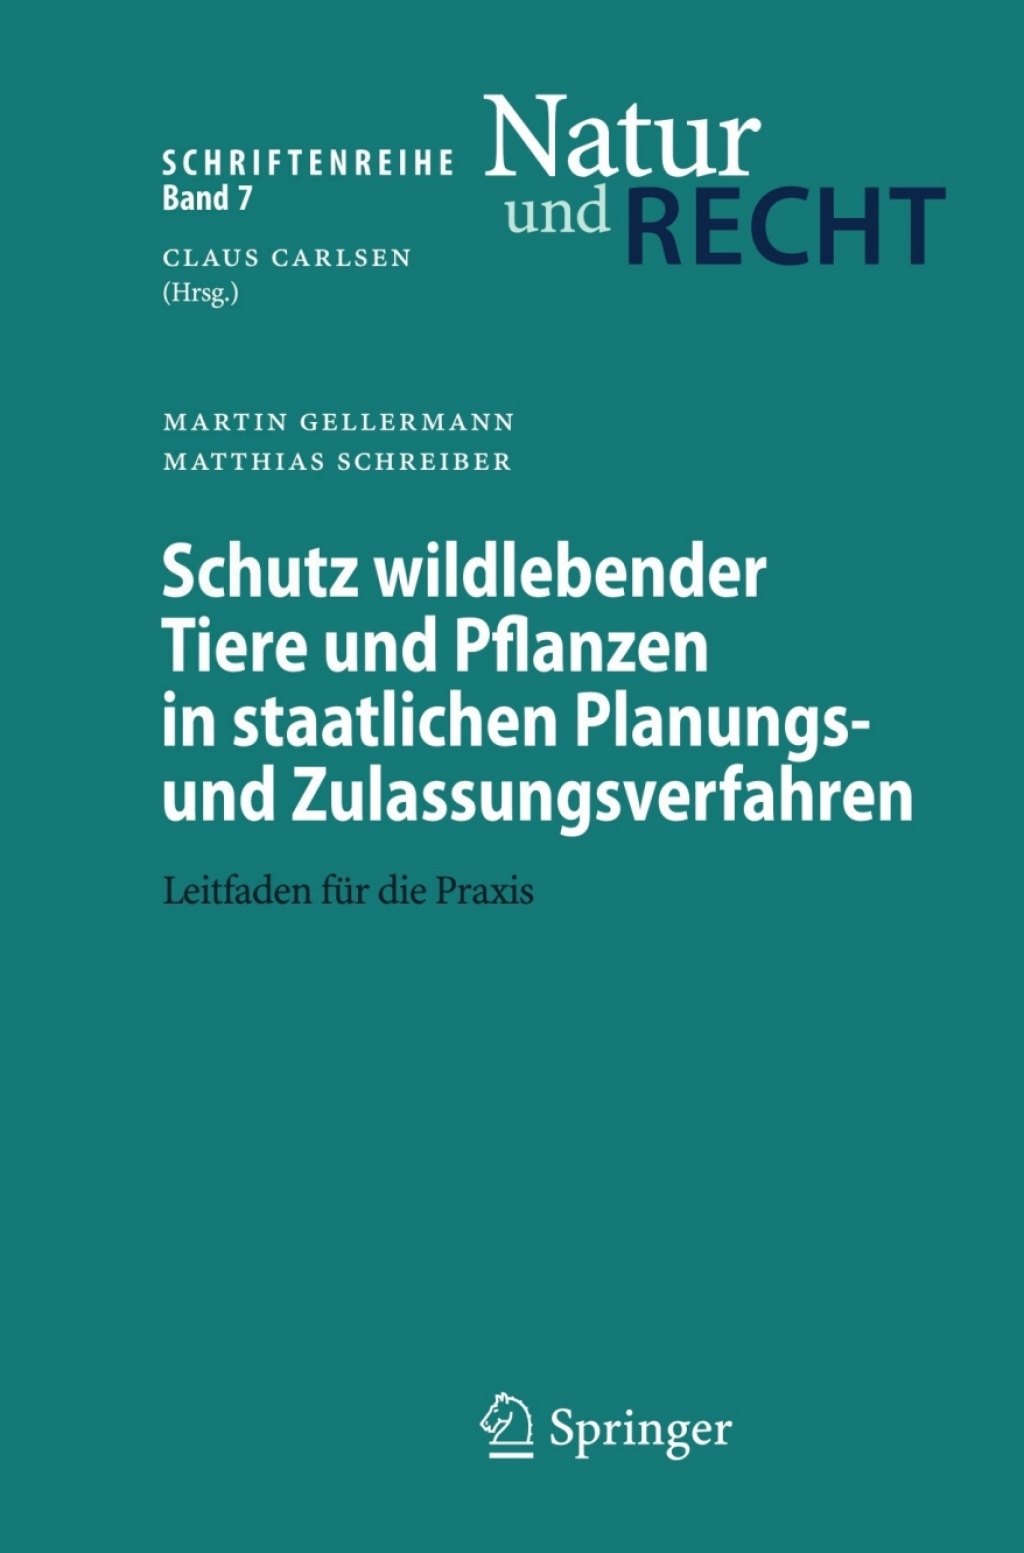 Schutz wildlebender Tiere und Pflanzen in staatlichen Planungs- und Zulassungsverfahren (eBook) - Martin Gellermann; Matthias Schreiber,